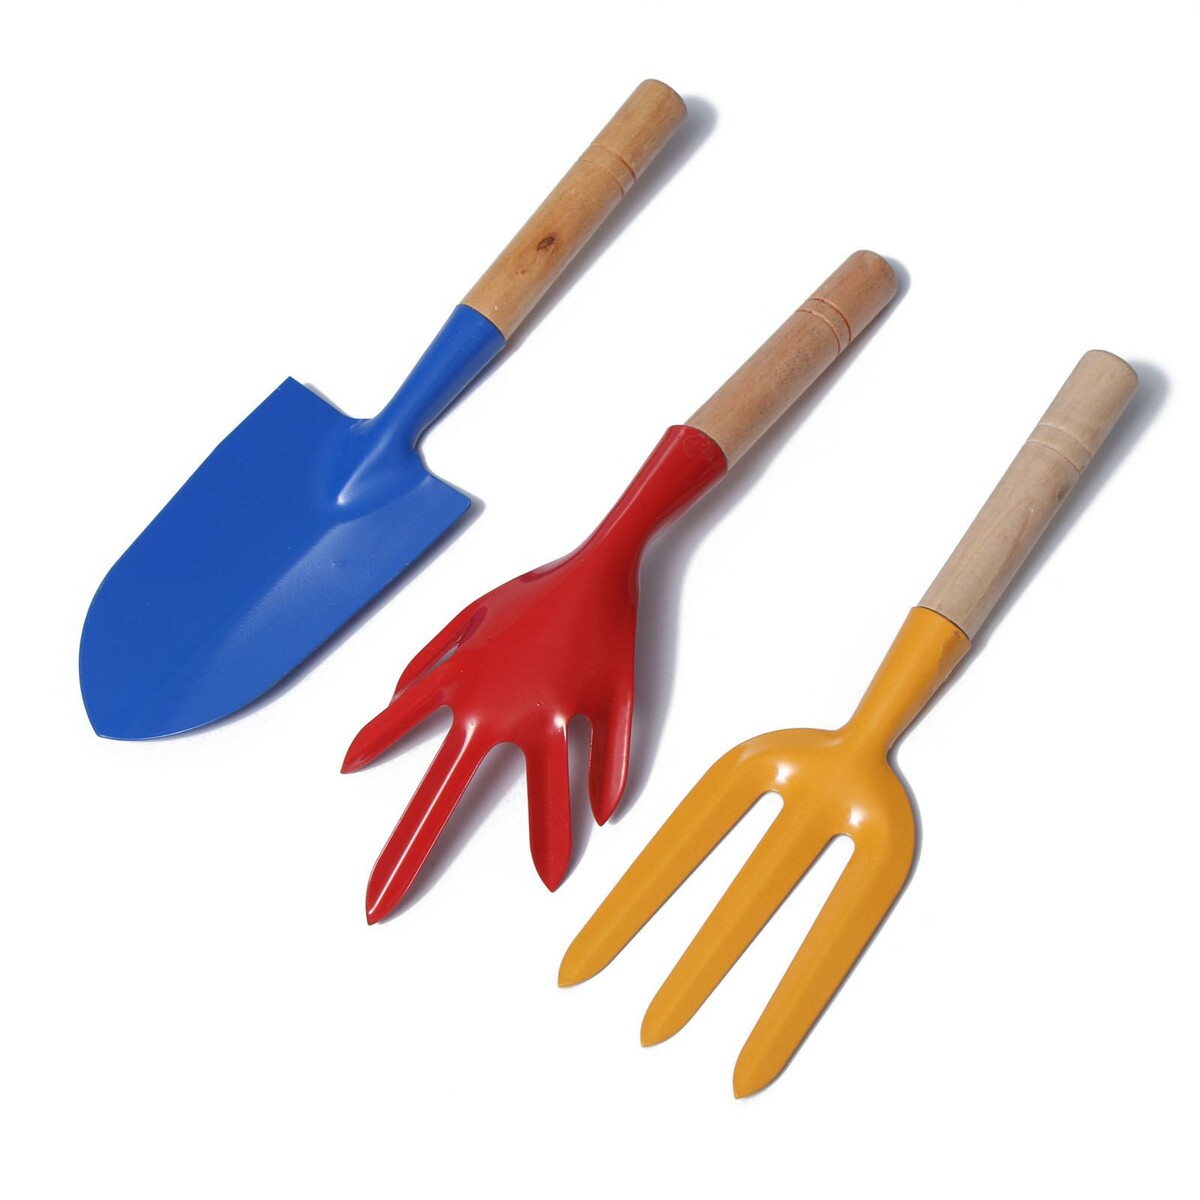 Набор садового инструмента, 3 предмета: совок, рыхлитель, вилка, длина 28 см, деревянные ручки набор для уборки soft touch 2 предмета щетка совок с контейнером микс